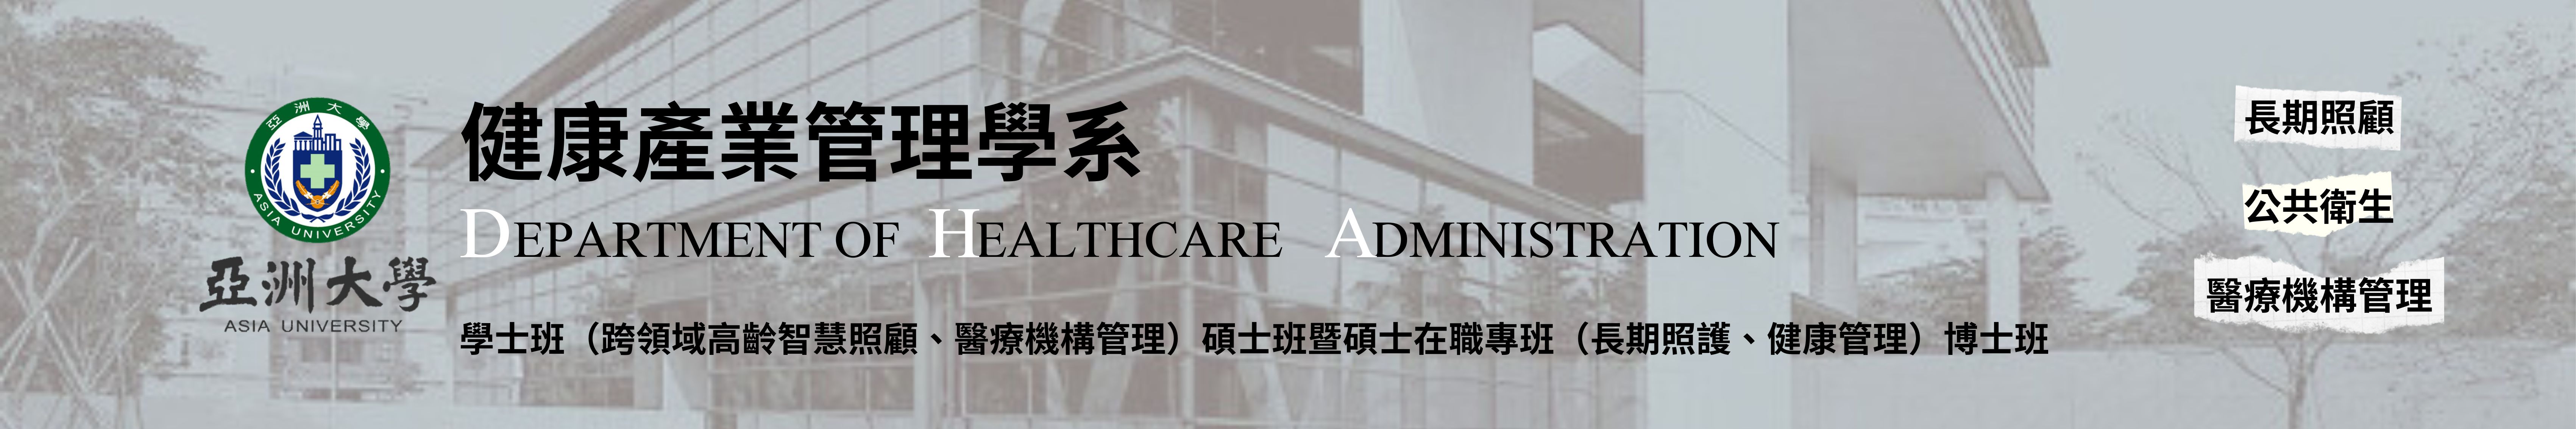 亞洲大學健康產業管理學系的Logo